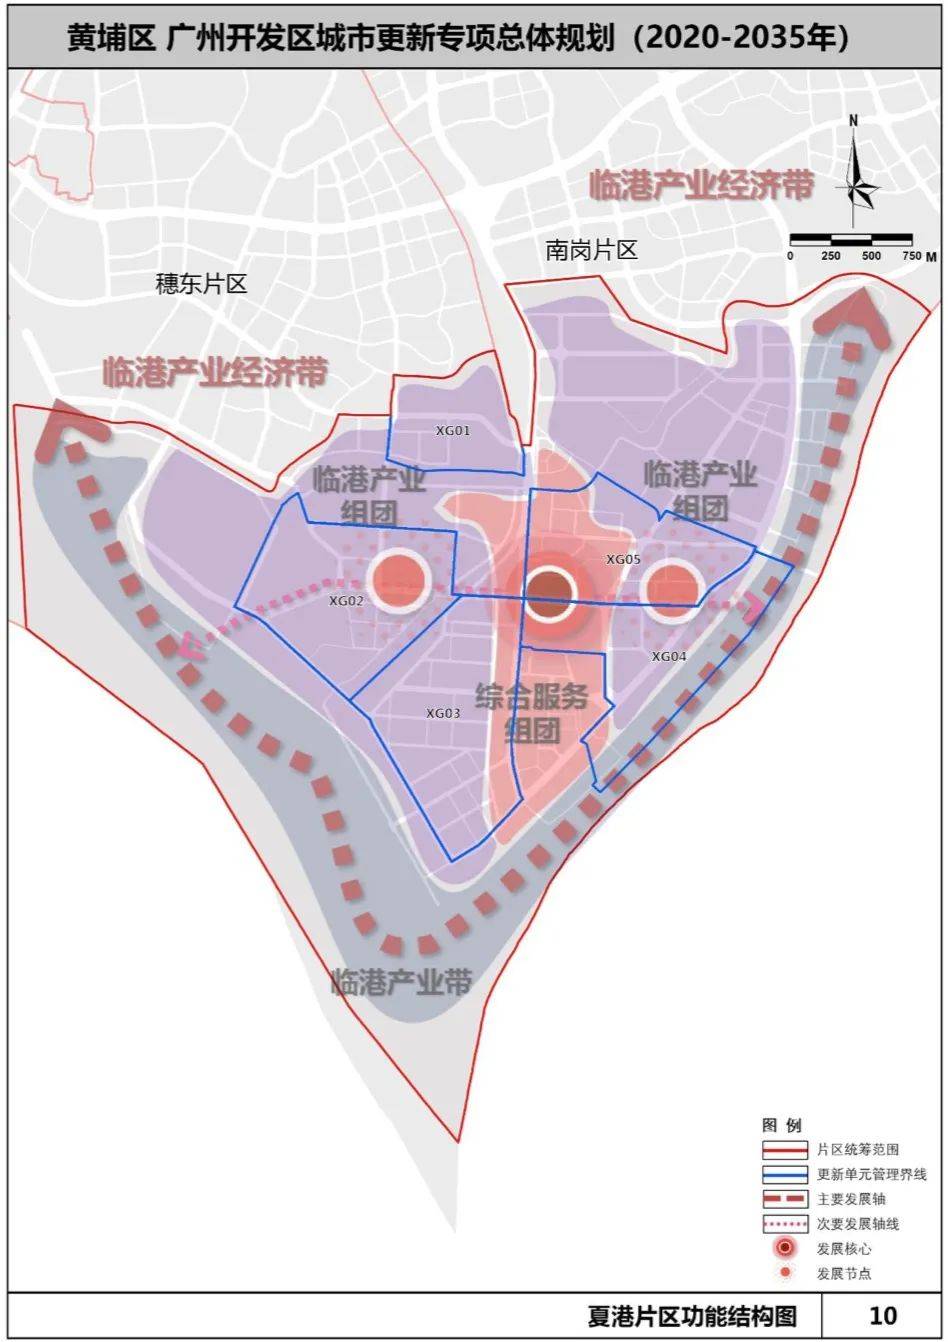 广州黄埔城市更新总体规划来了!未来10年这样改!